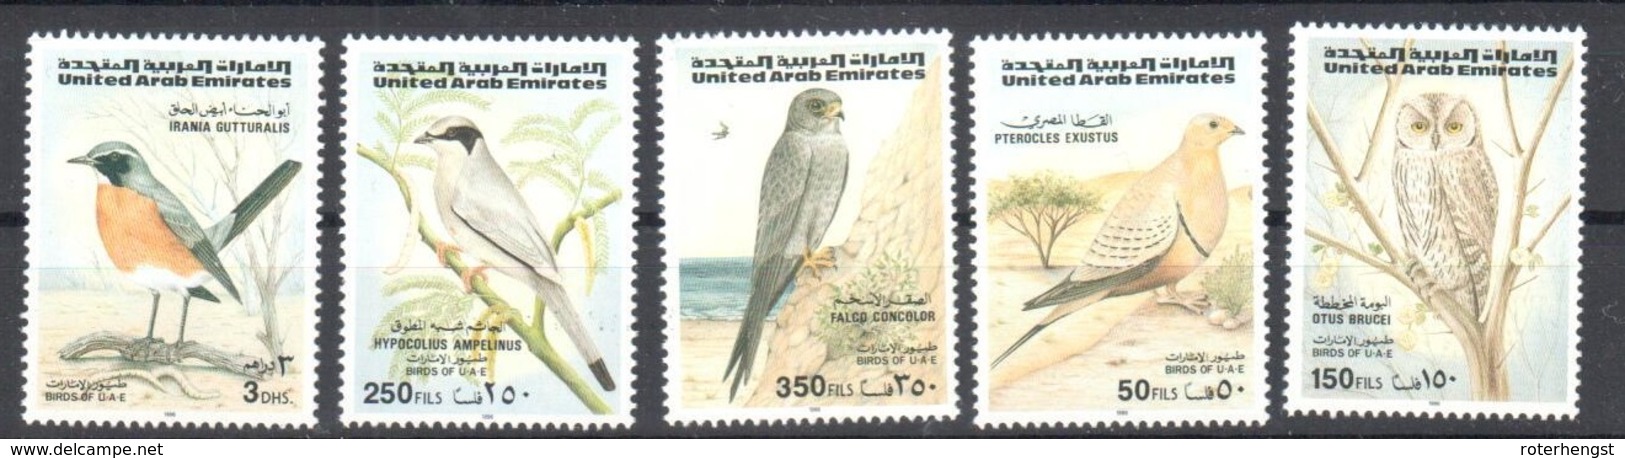 UAE Birds Set Mnh ** 1996 14 Euros - United Arab Emirates (General)